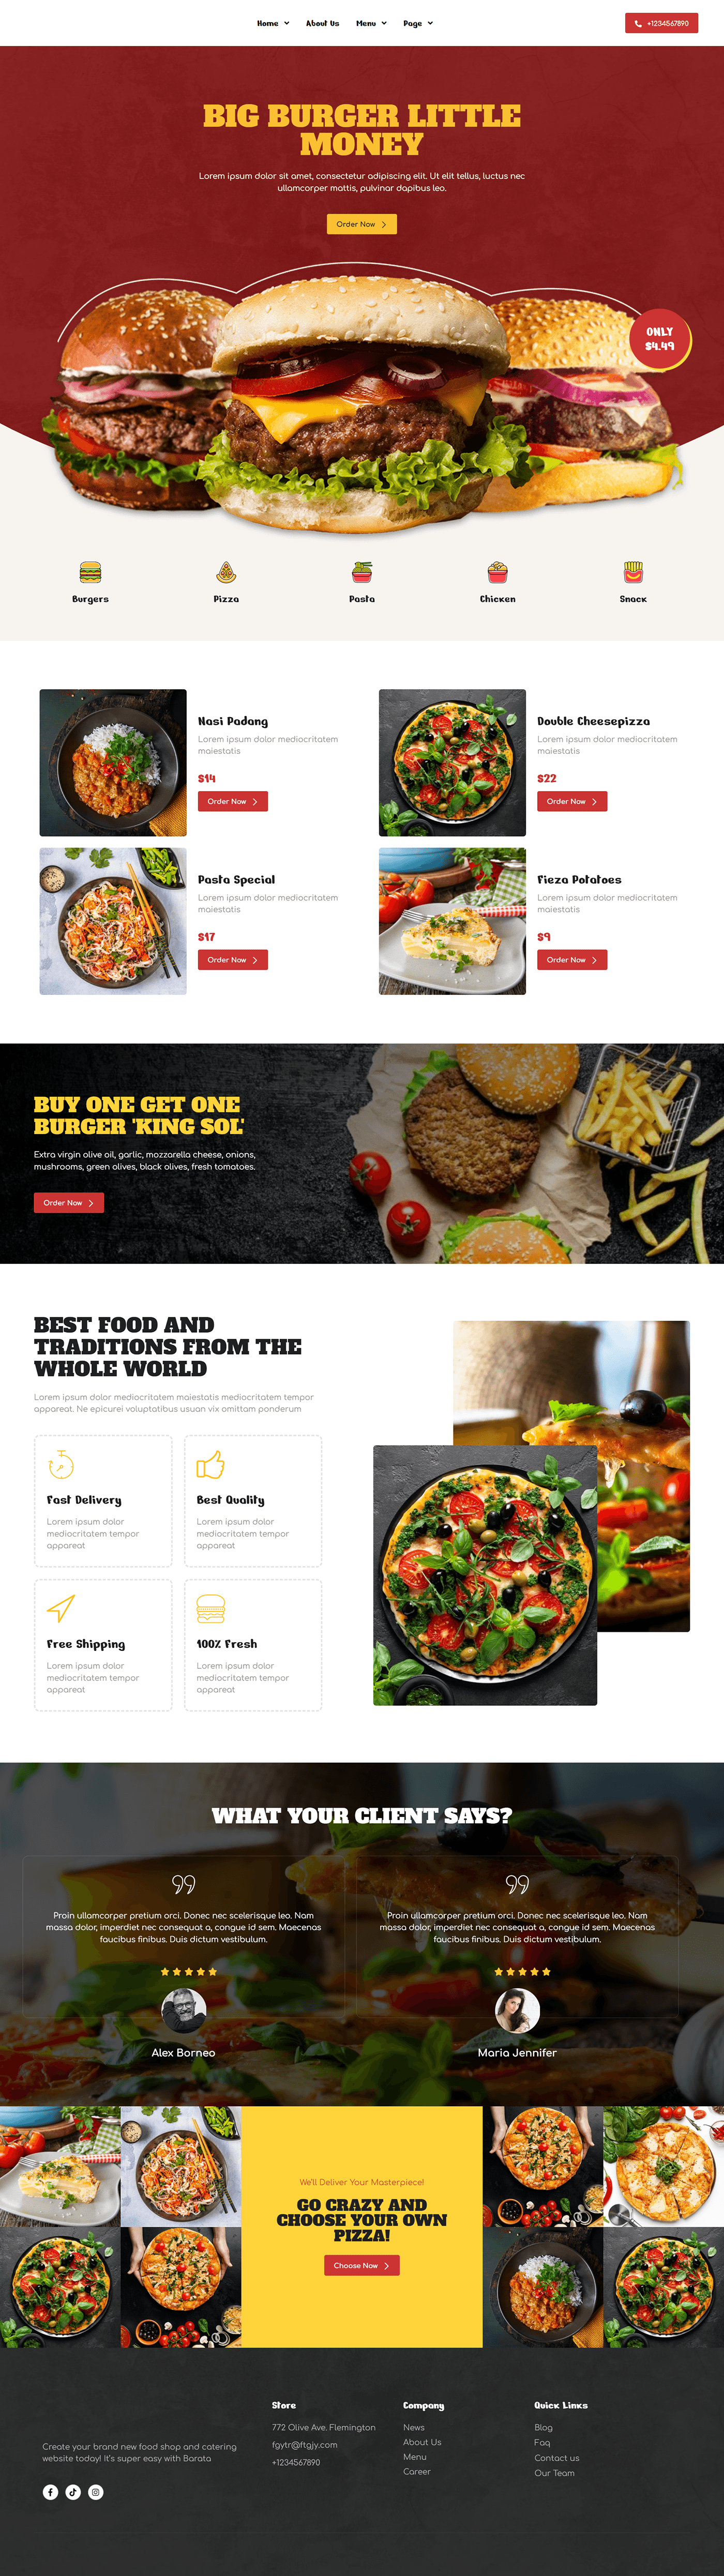 Website Design Restaurant Website Service Website Blog website landing page design Responsive Design Fast food website